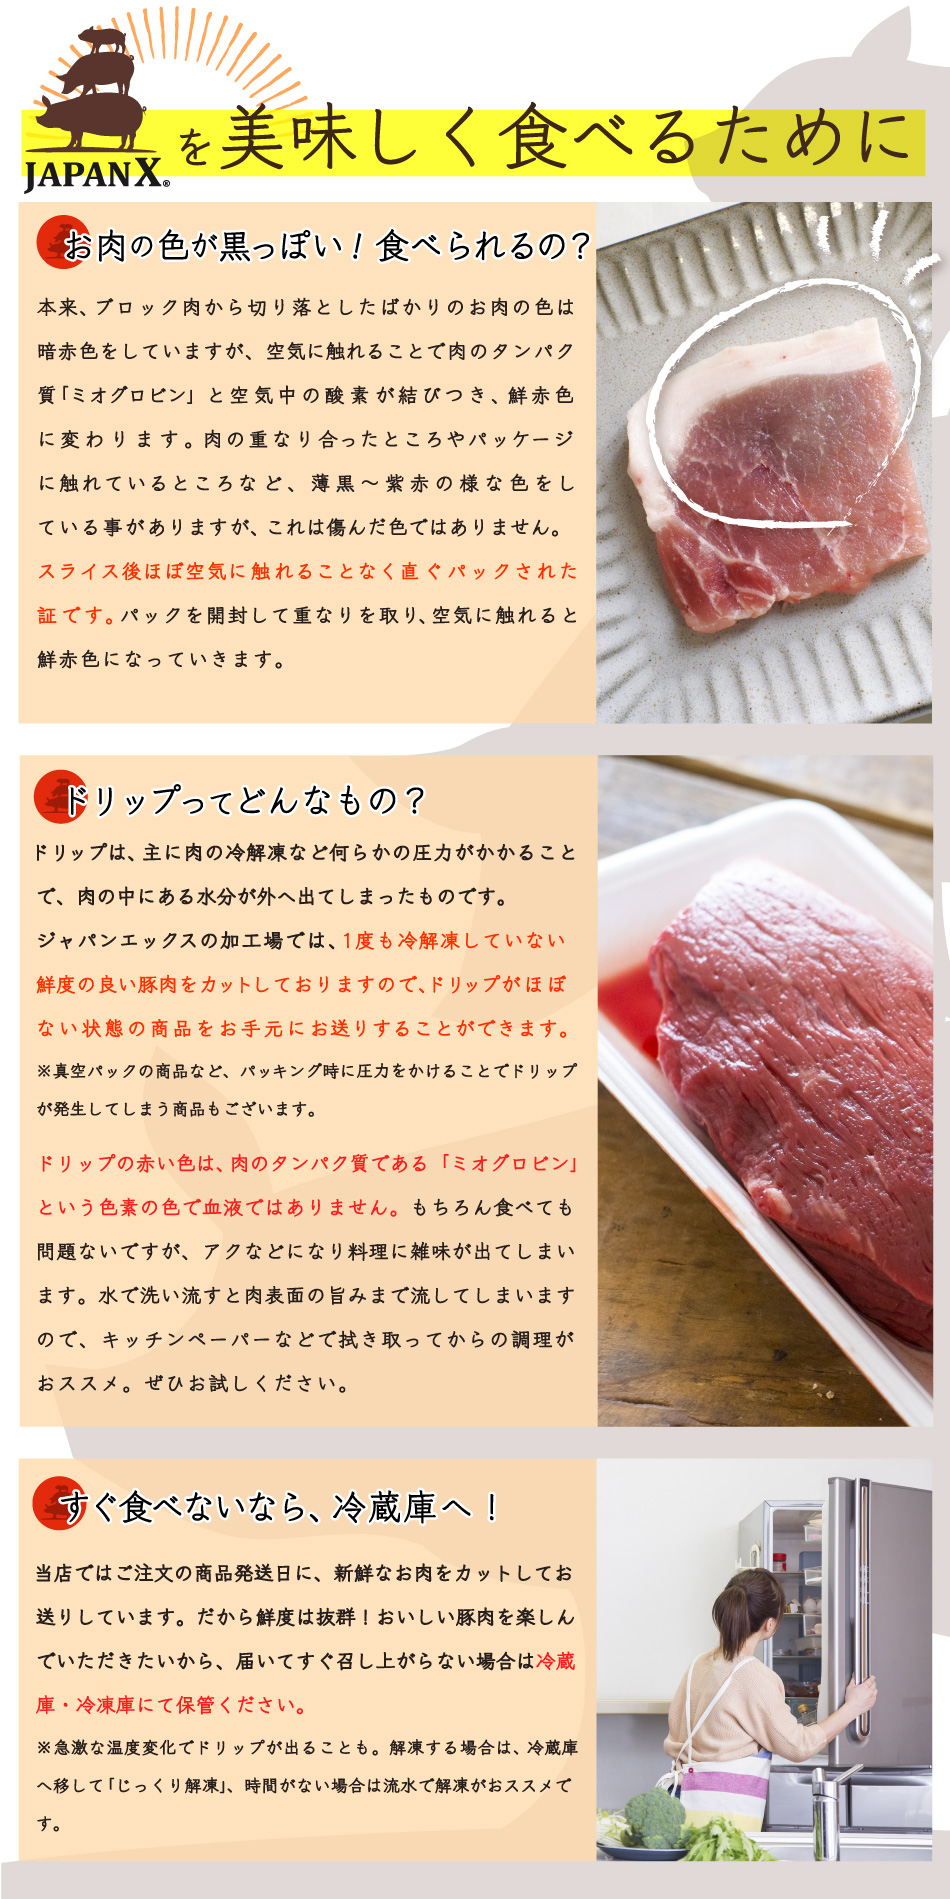 JAPAN X,ジャパンエックス,JAPAN X,豚しゃぶセット,ジャパンエックスを美味しく食べるために,肉の色が変,食べられるの,食べていいの,ドリップってなに？,ドリップは血ではない！,届いてすぐ食べないなら冷蔵庫へ,